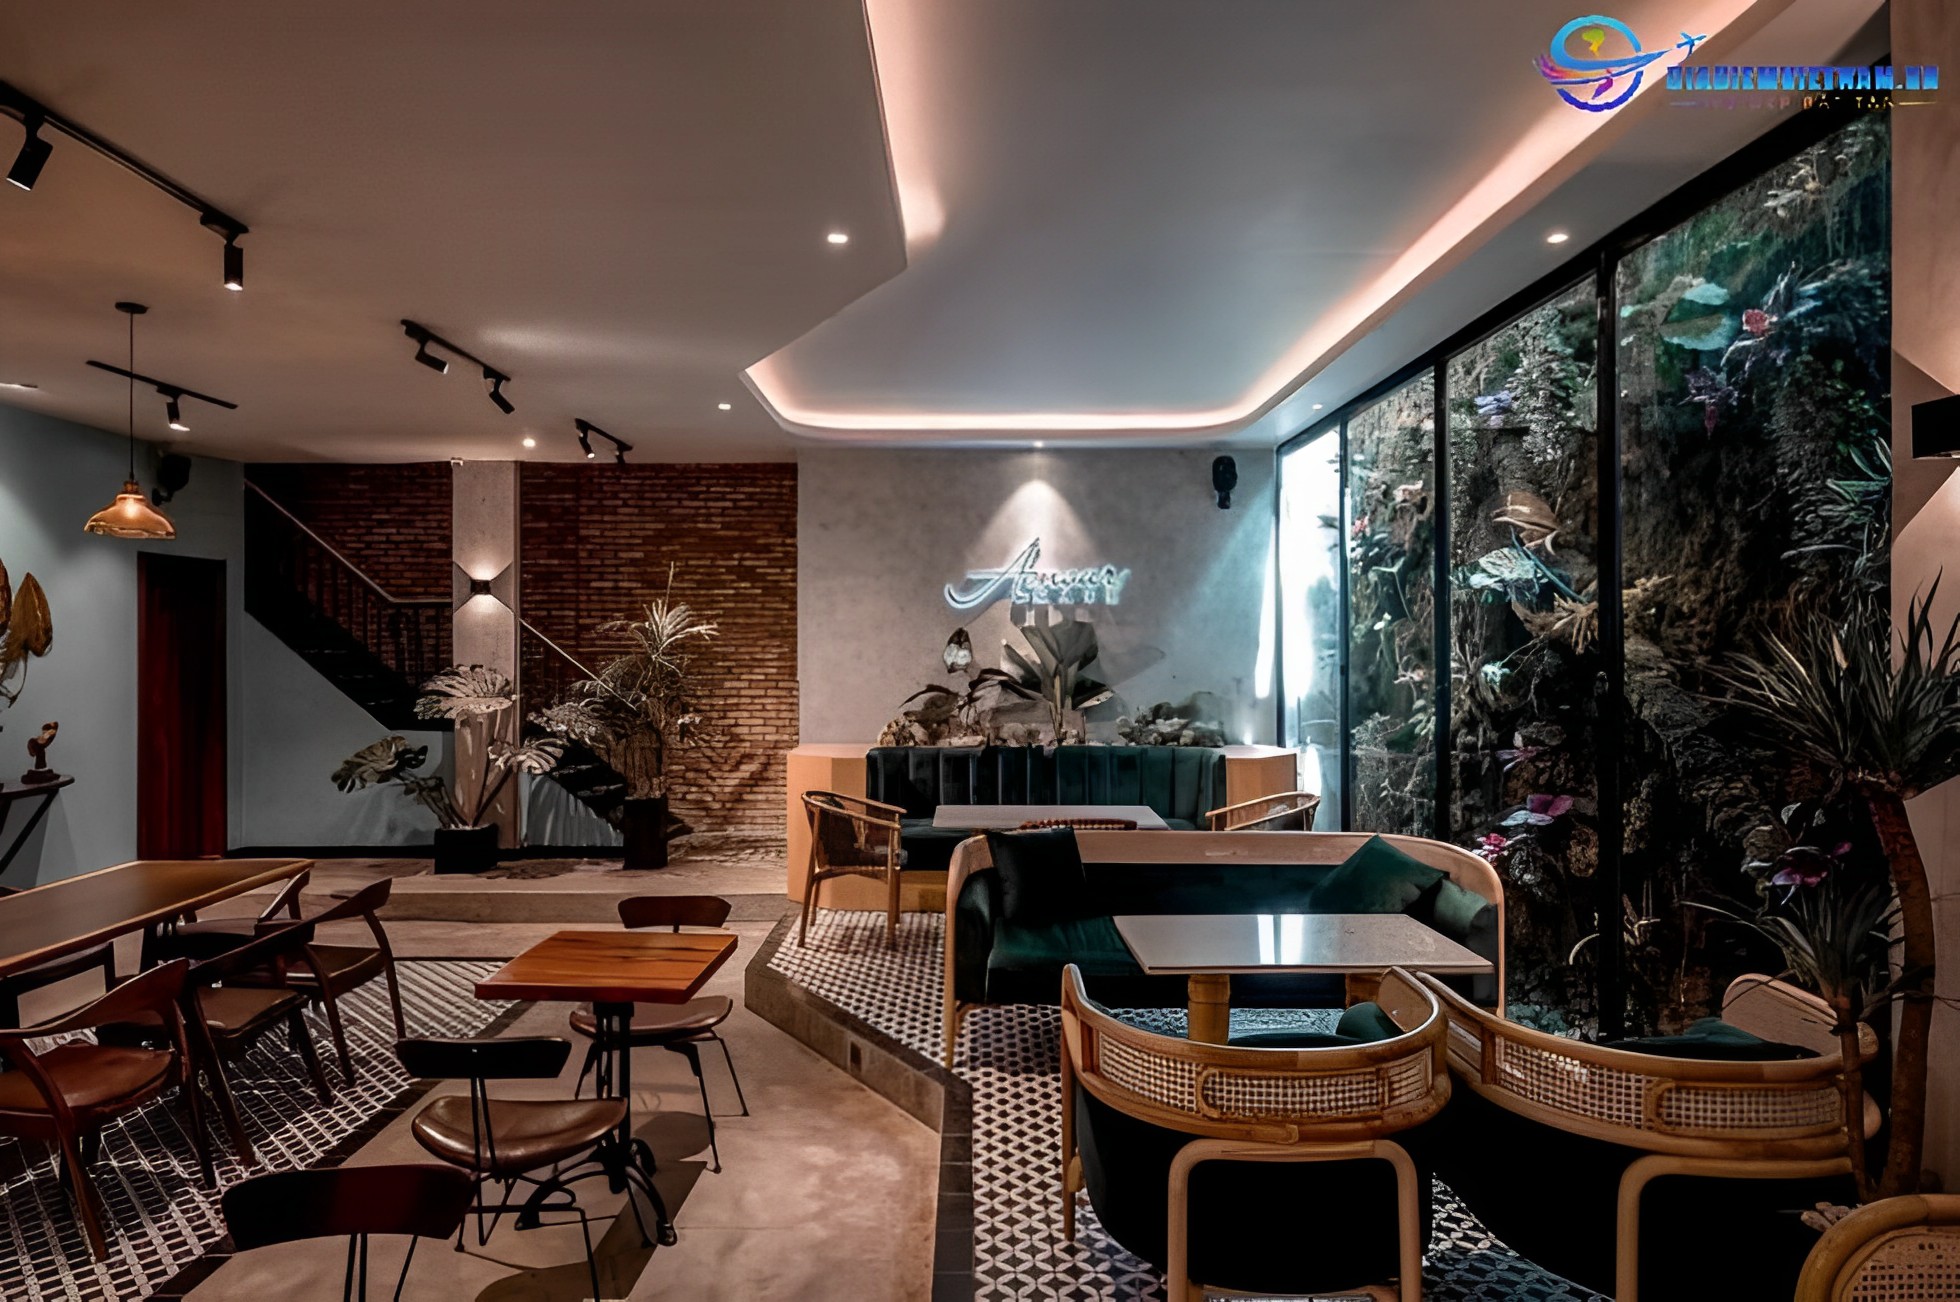 De L’amour Cafe - Quán cafe sang trọng thành phố Thái Nguyên 